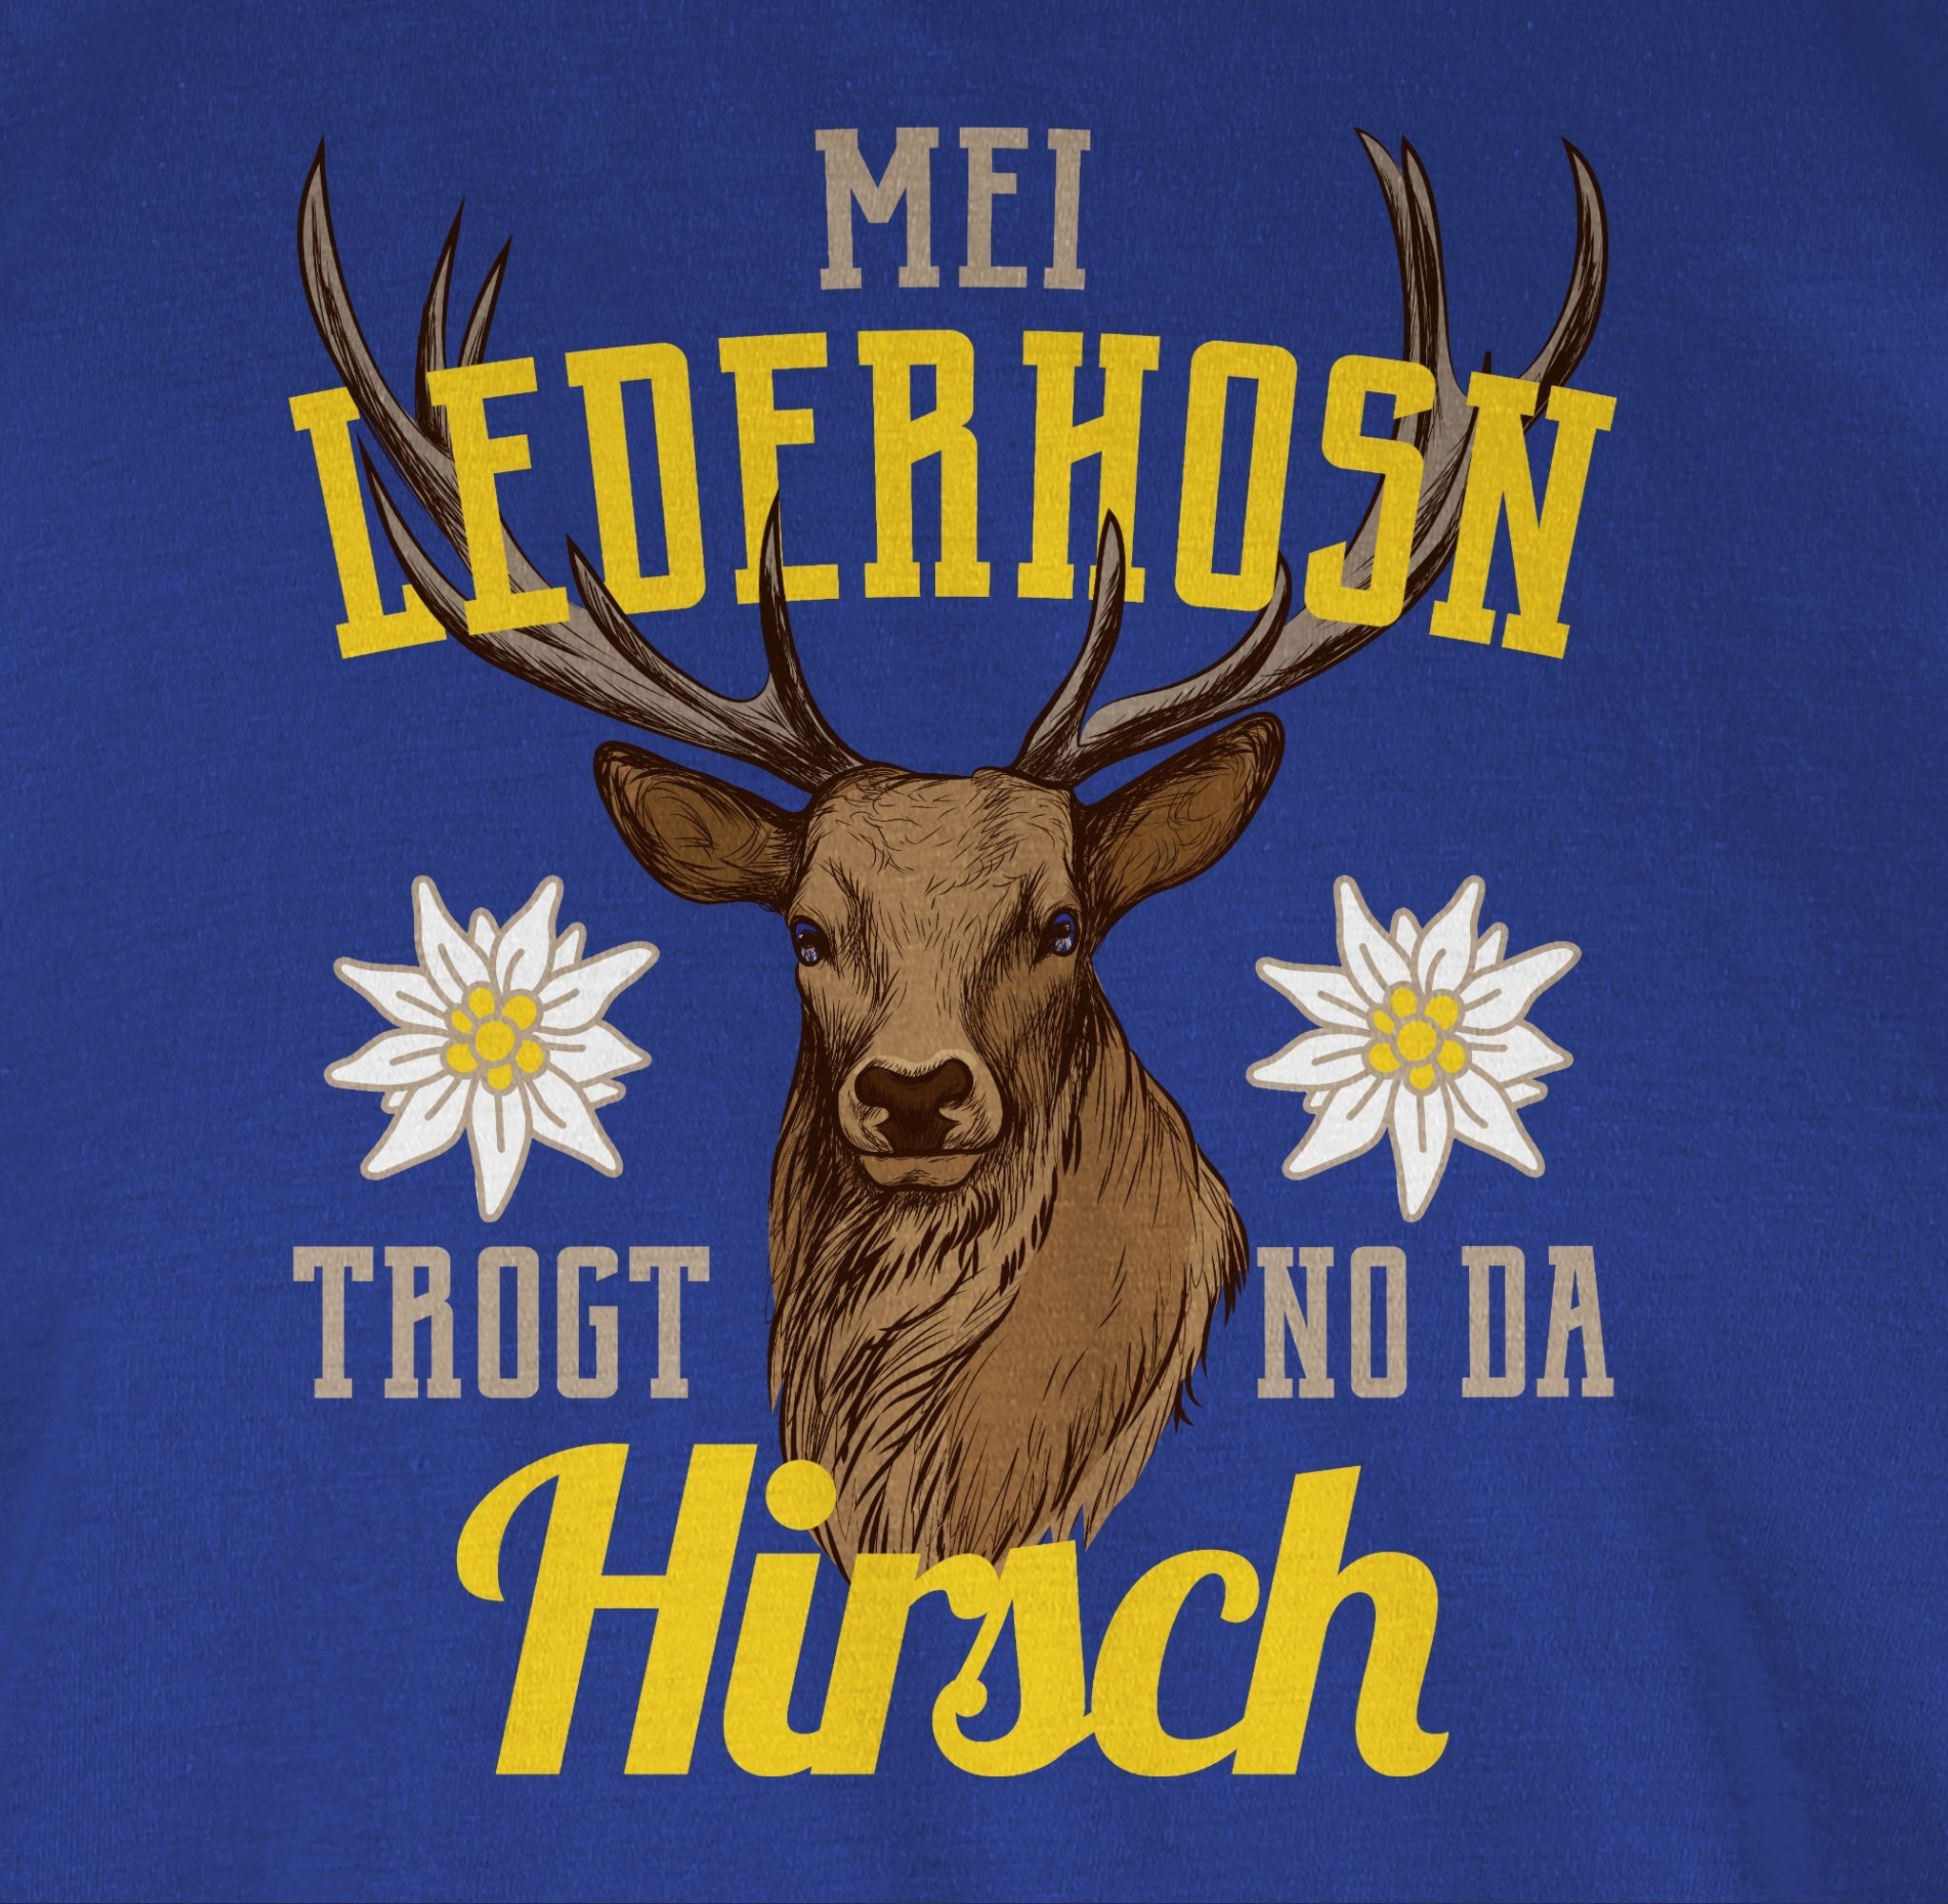 Shirtracer T-Shirt Mode 2 trogt gelb/braun Hirsch - no Herren Lederhosn für Mei Royalblau da Oktoberfest